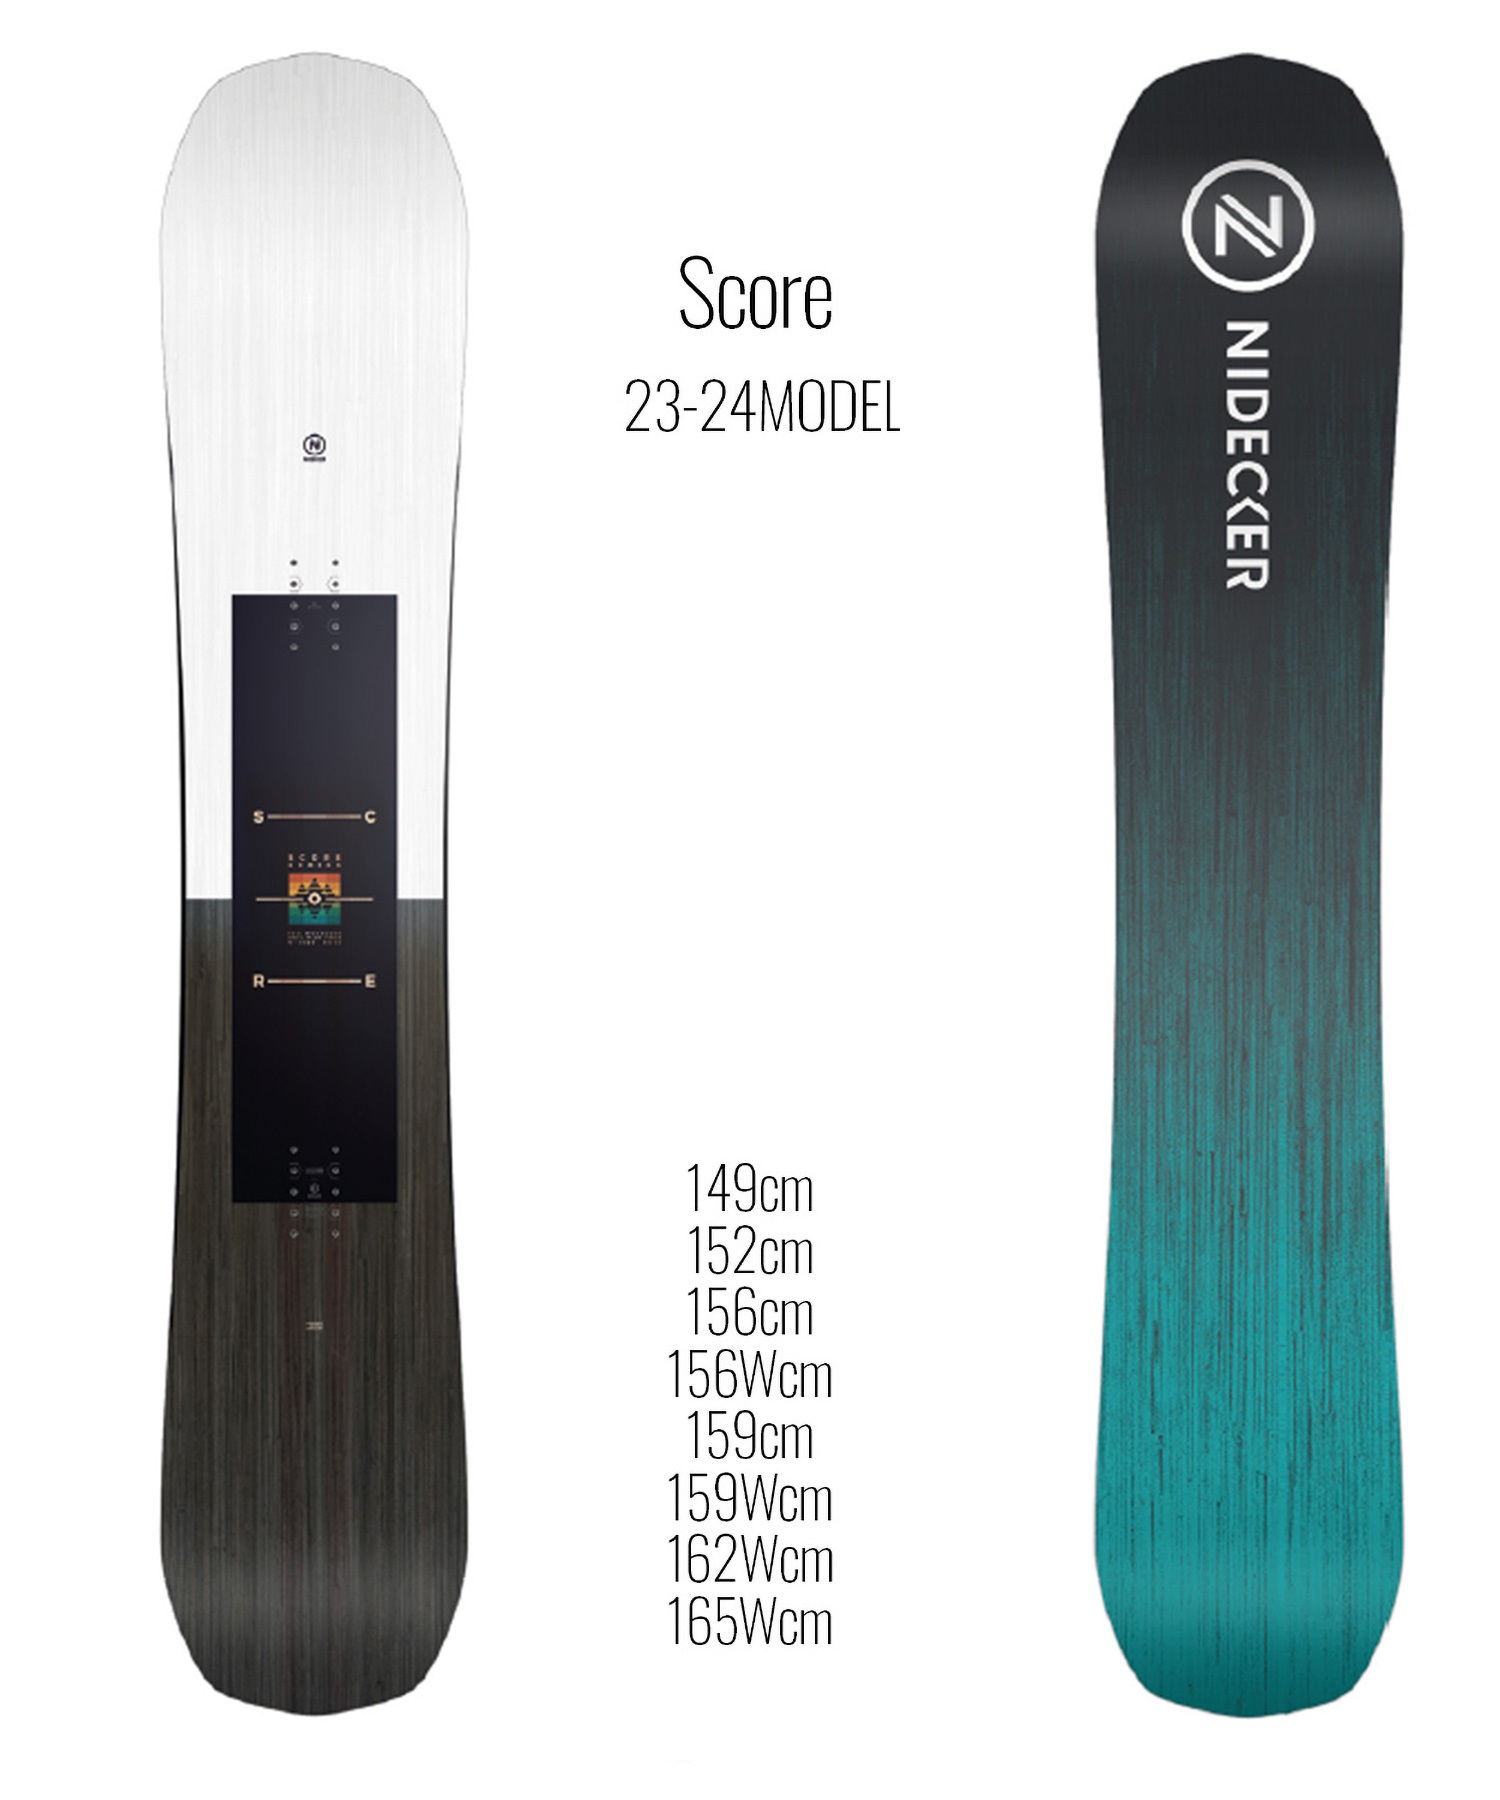 【早期購入/店頭受取対象外】スノーボード 板 メンズ NIDECKER ナイデッカー Score 23-24モデル ムラサキスポーツ KK B10(Score-149cm)